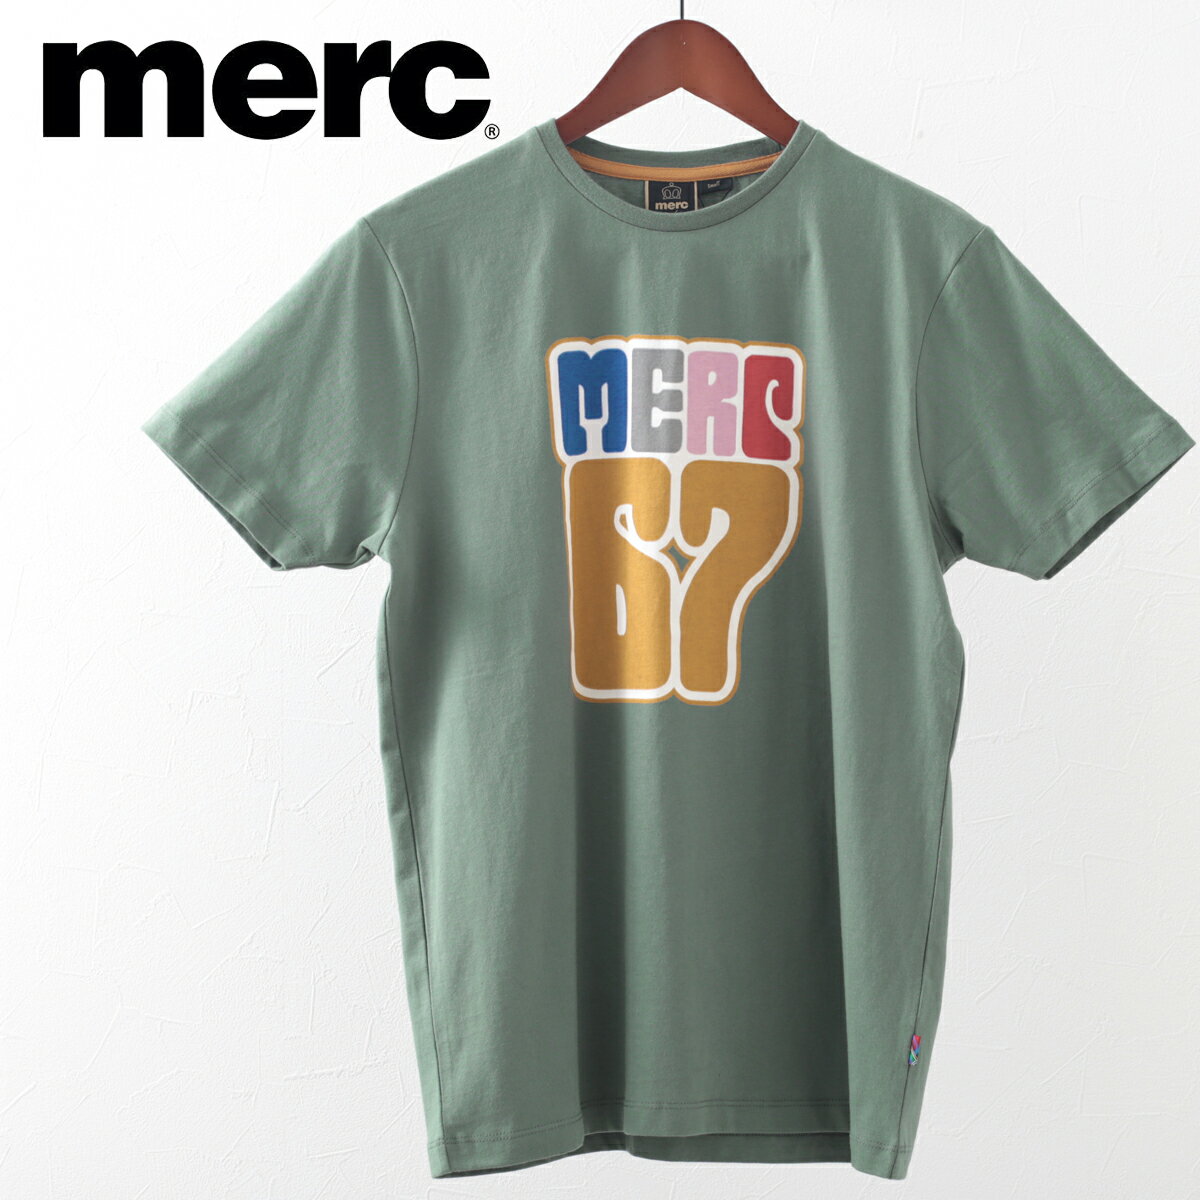 メルクロンドン メンズ Tシャツ 20s コンバットグリーン Merc London グラフィック プリント モッズファッション プレゼント ギフト